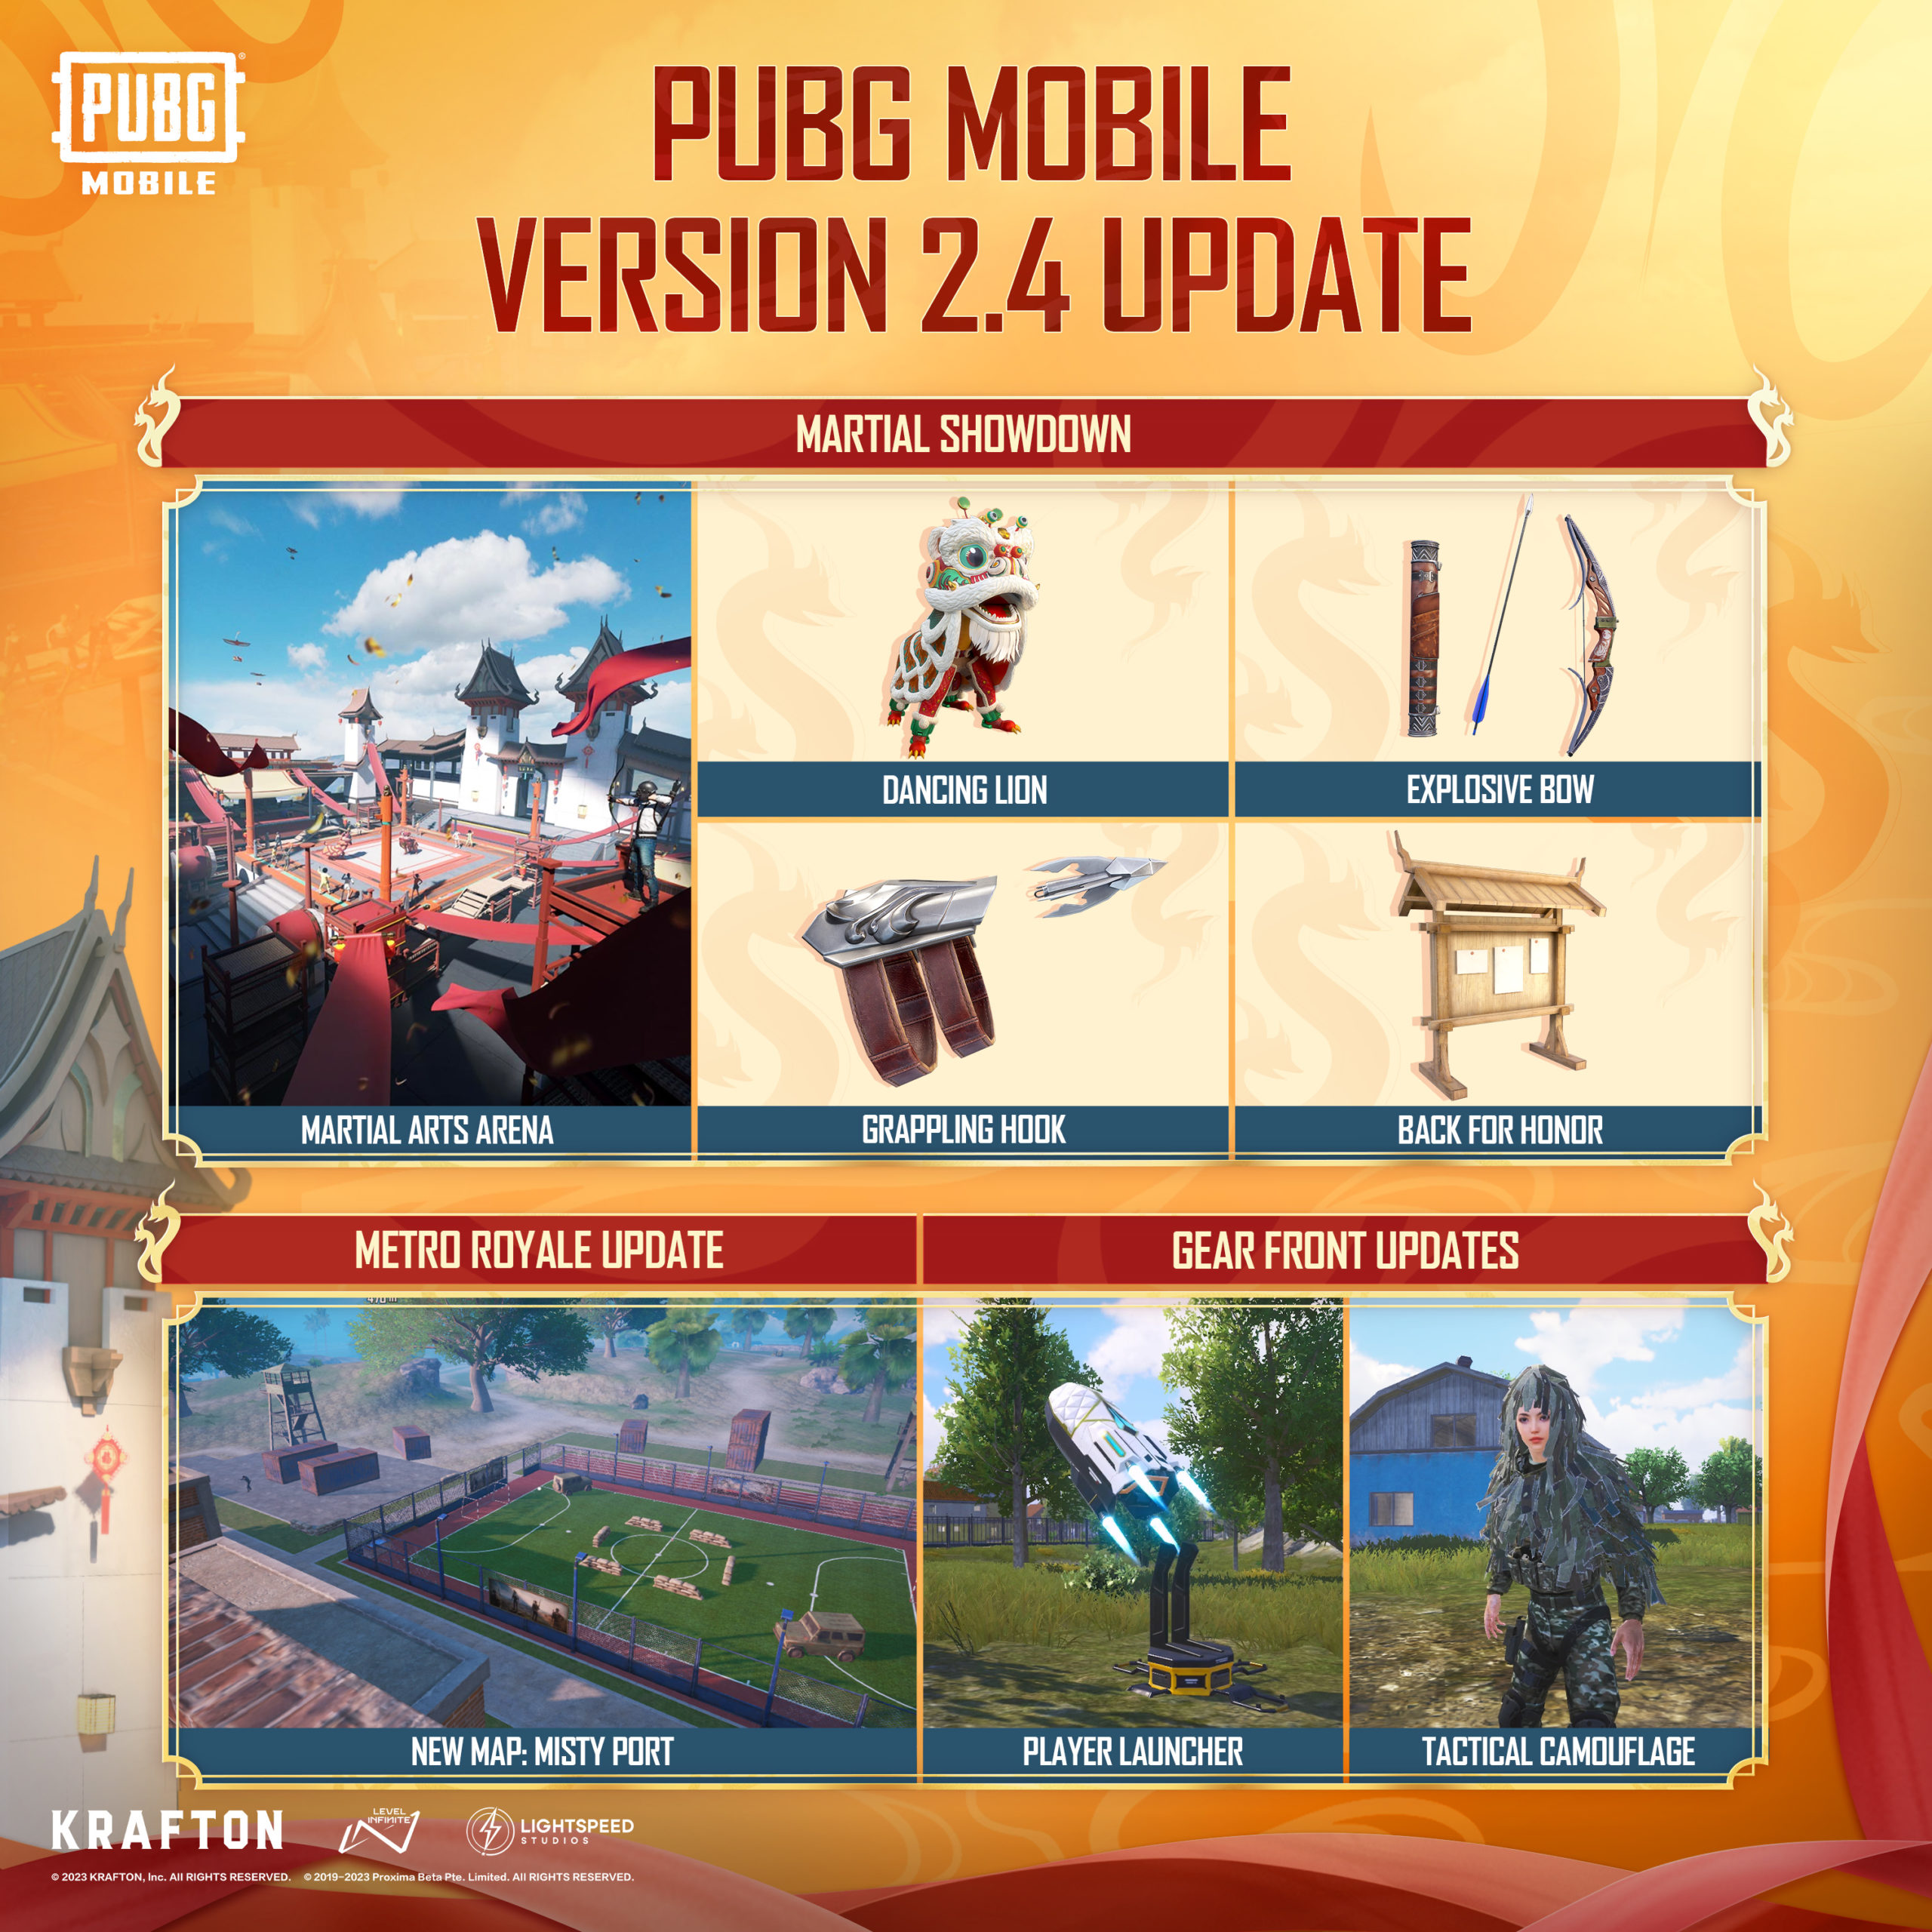 PUBGM 2.4 Update